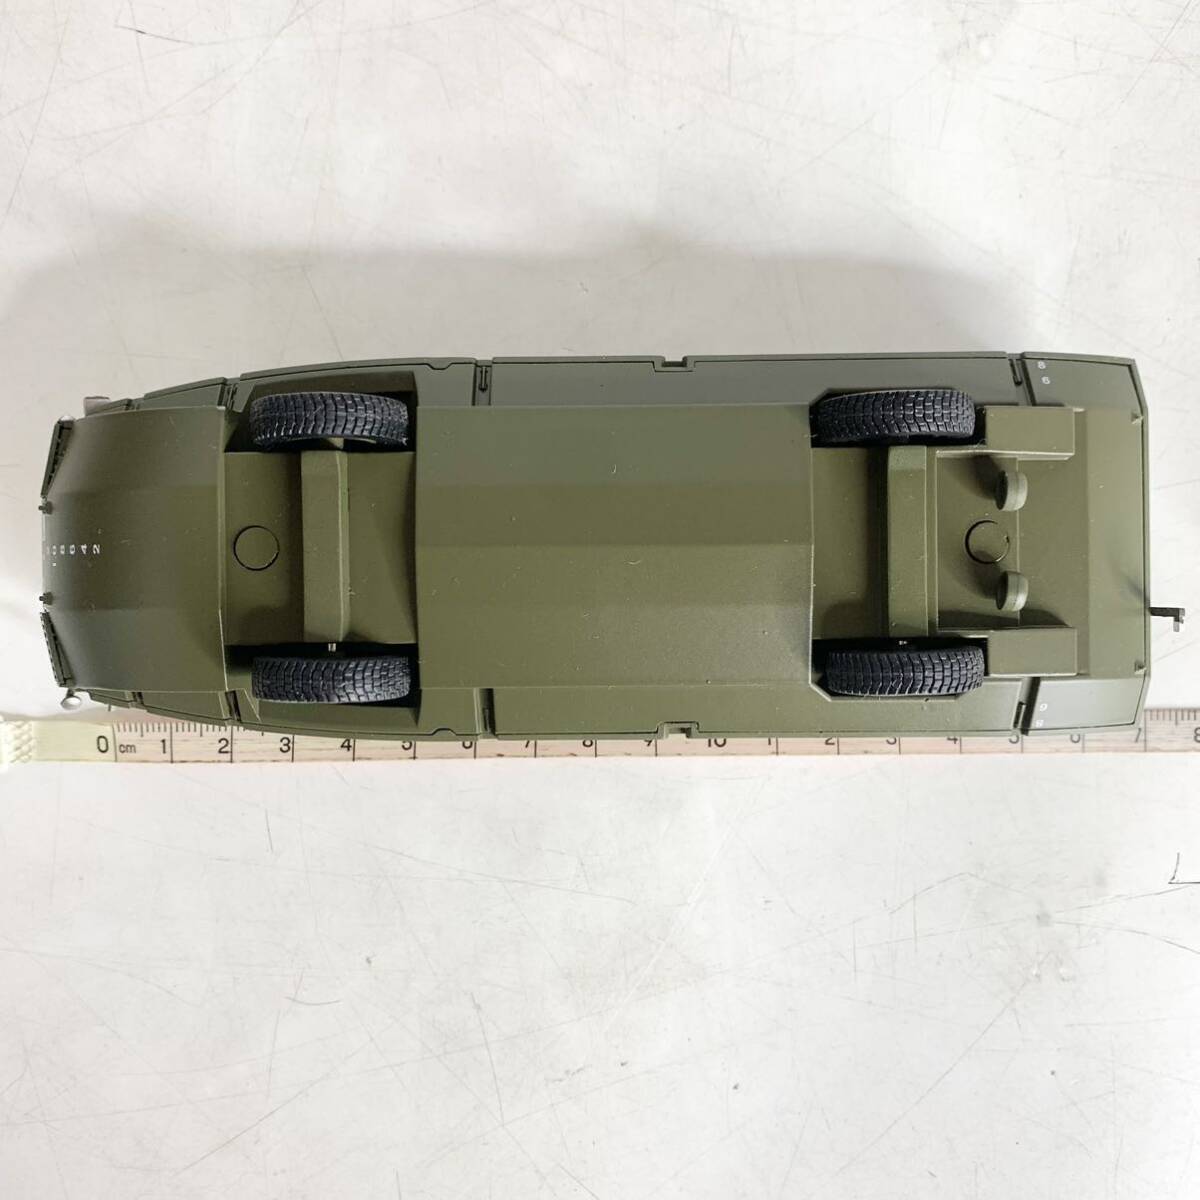 陸上自衛隊 94式水際地雷敷設装置 デアゴスティーニ ダイキャスト DeAGOSTINI 自衛隊モデルコレクション 模型の画像8